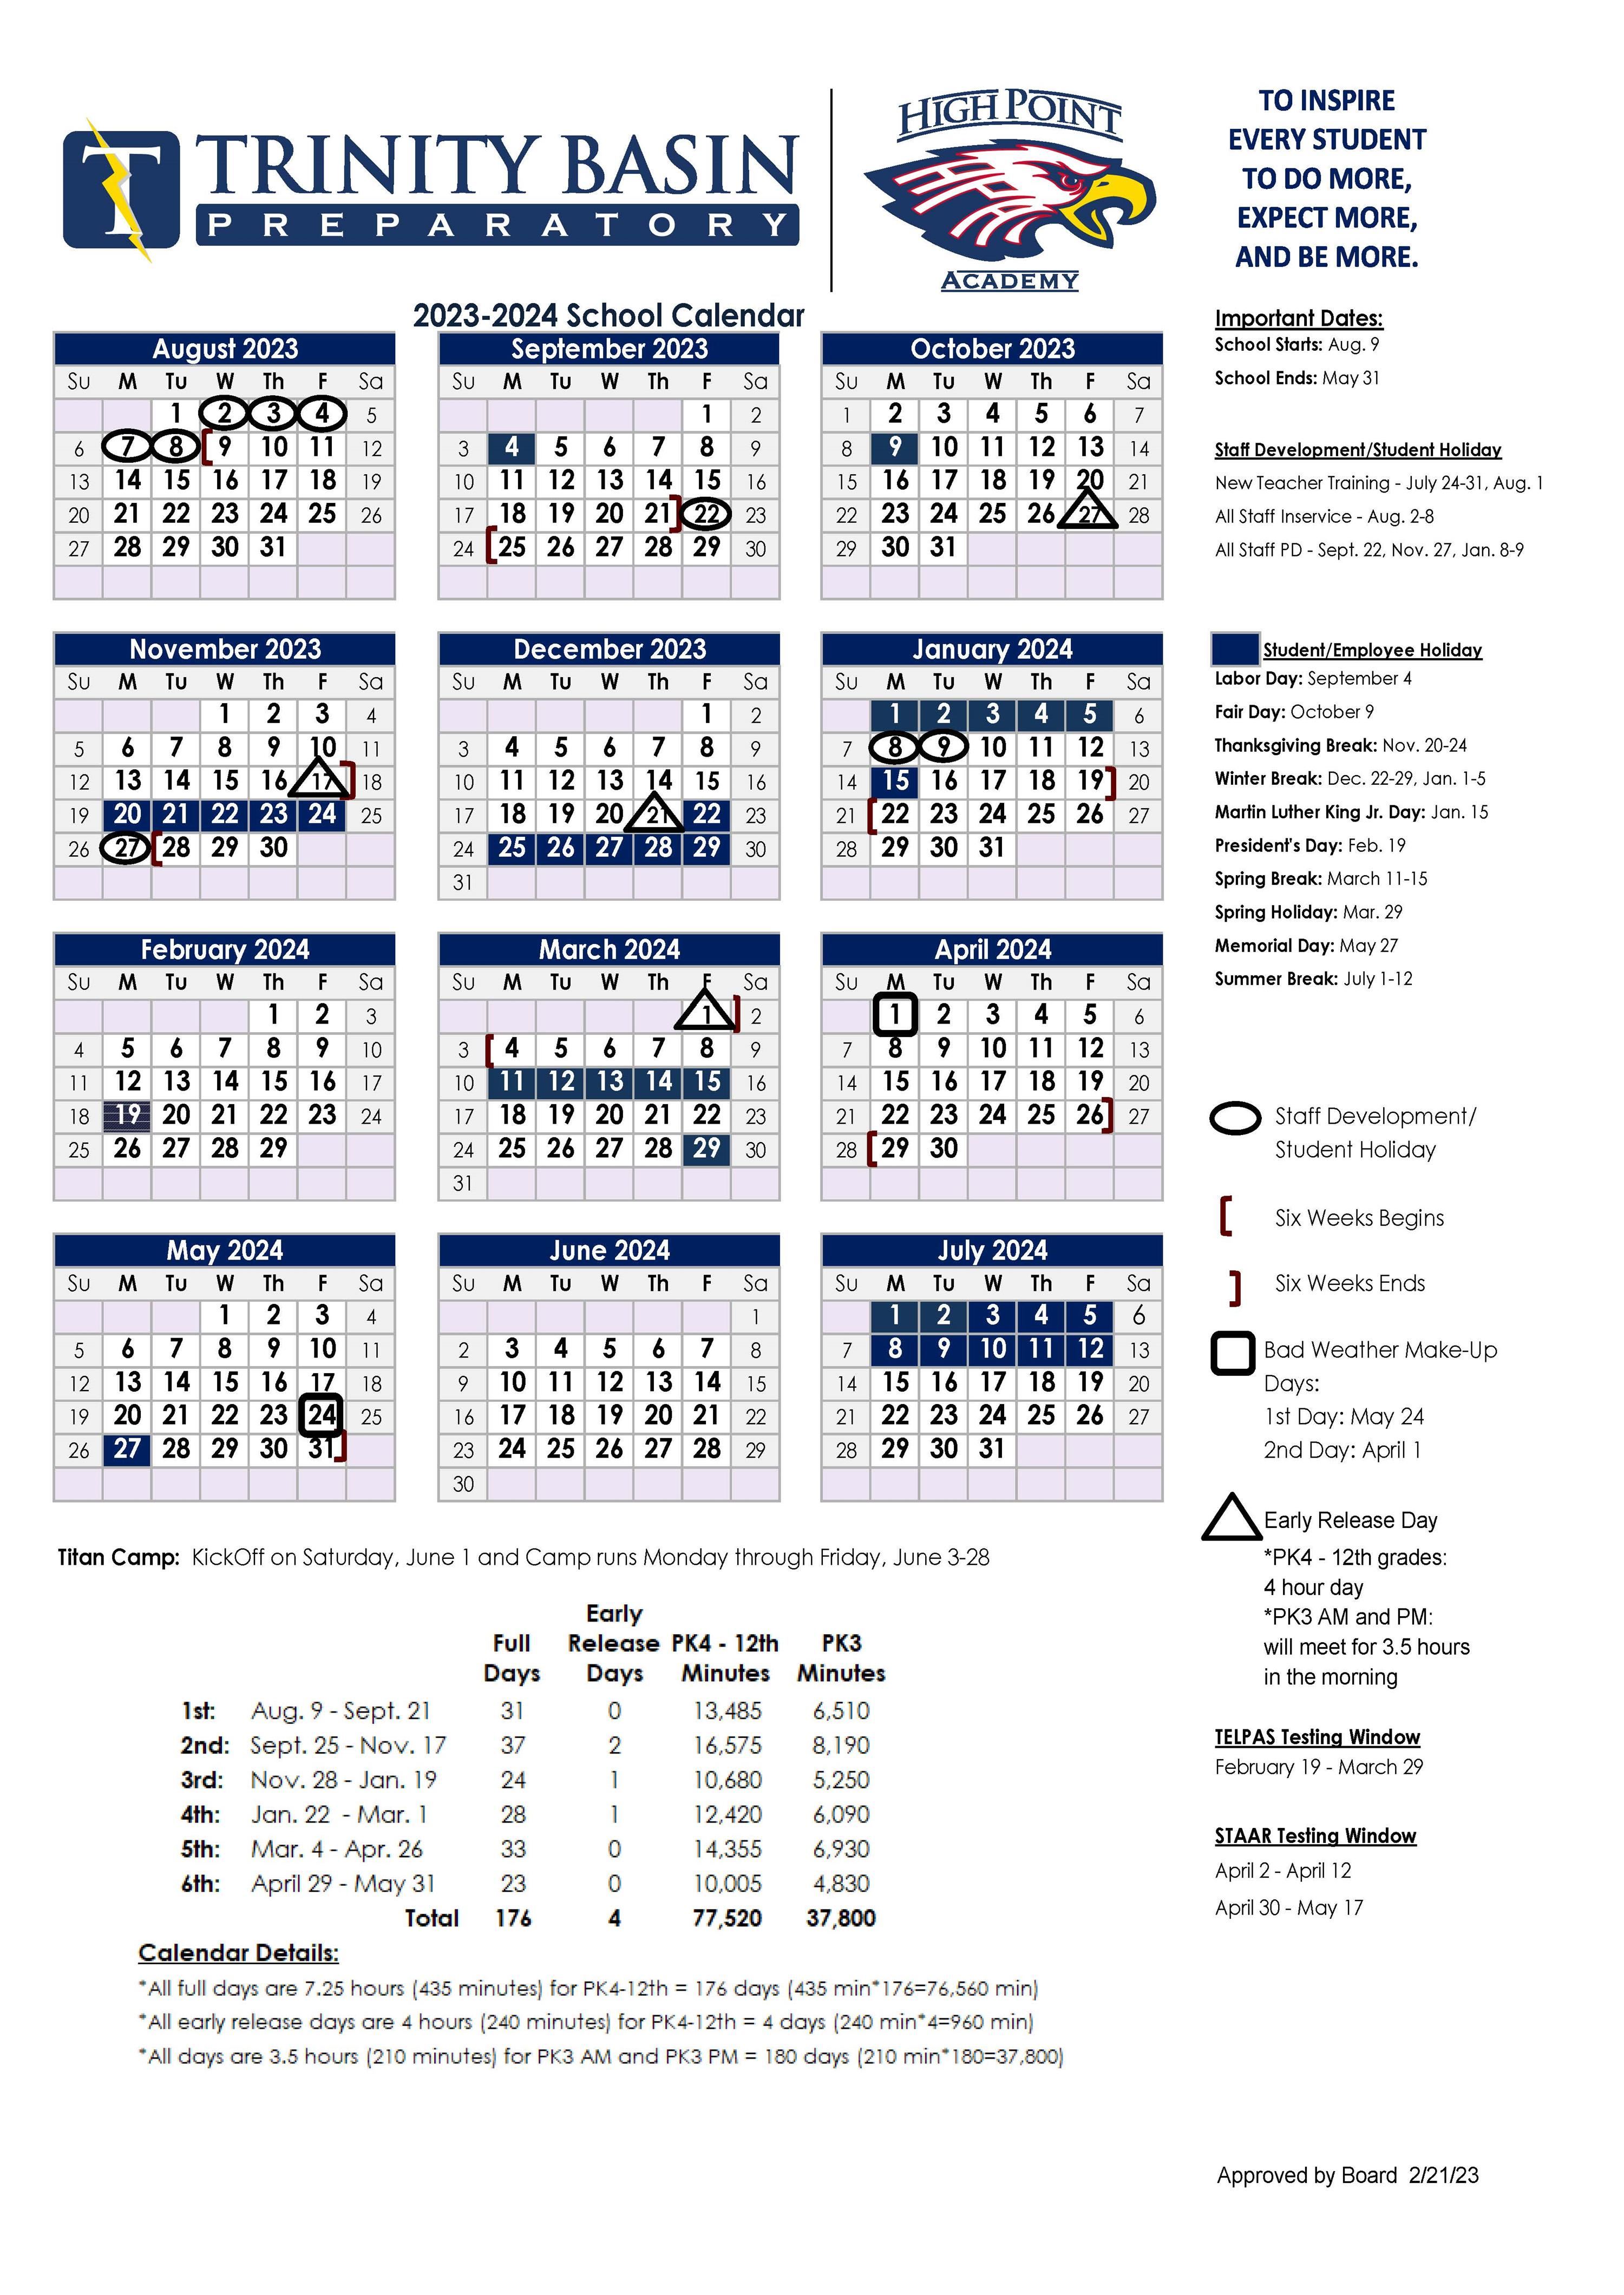 2023-2024 Trinity Basin Preparatory and High Point Academy Academic Calendar